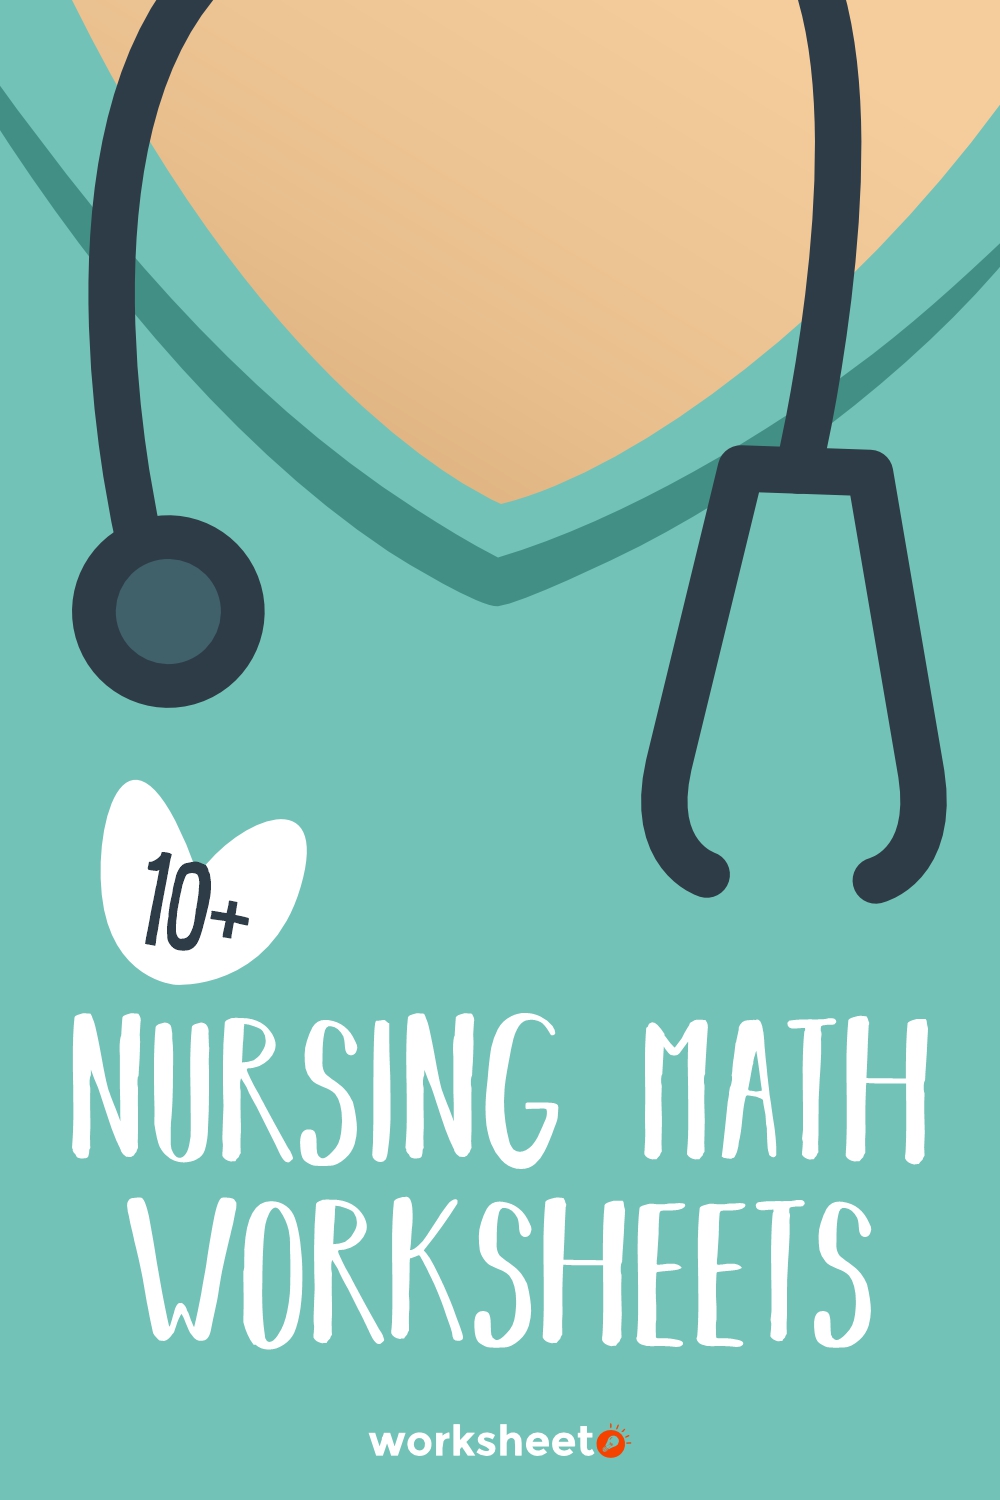 16 Images of Nursing Math Worksheets